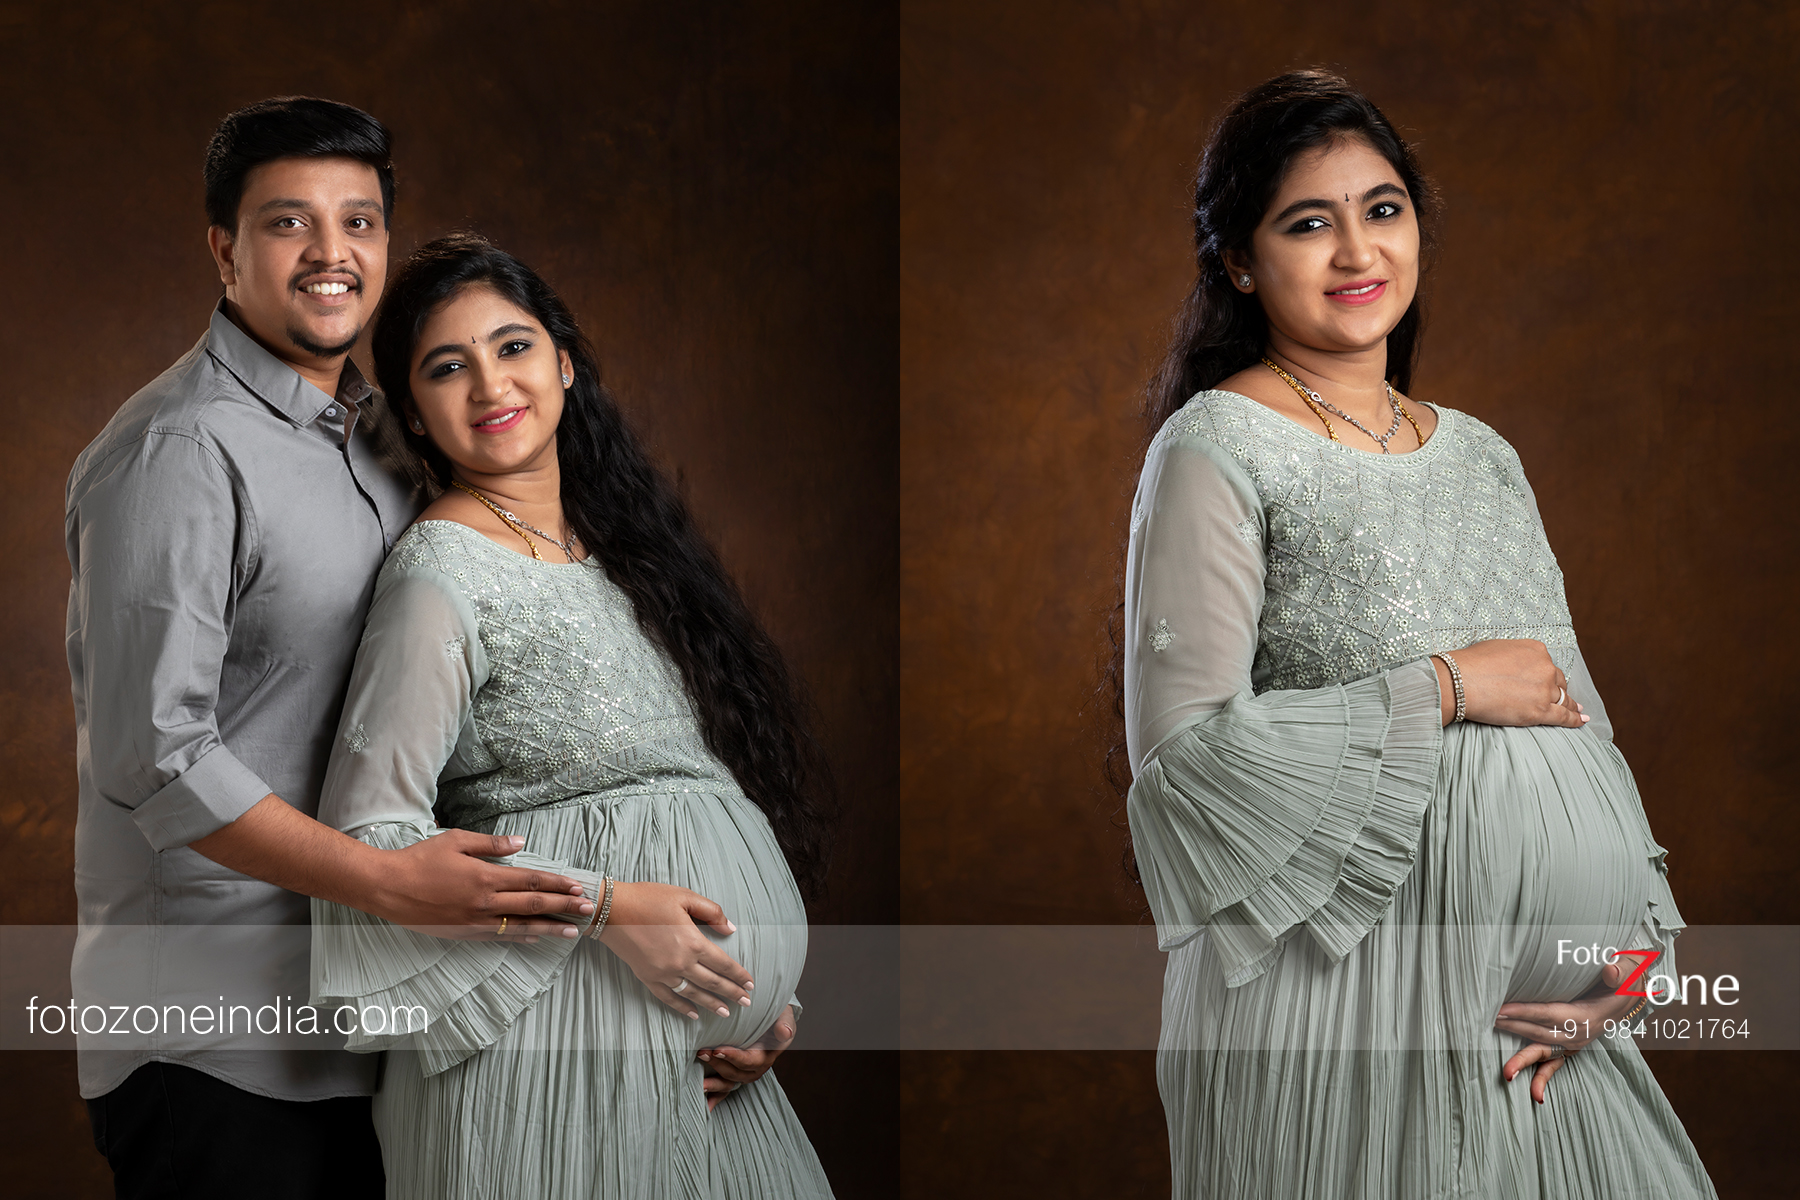 Indian Maternity Session #weddingnet #wedding #india … | Maternity  photography poses couple, Maternity photography poses pregnancy pics,  Couple pregnancy photoshoot